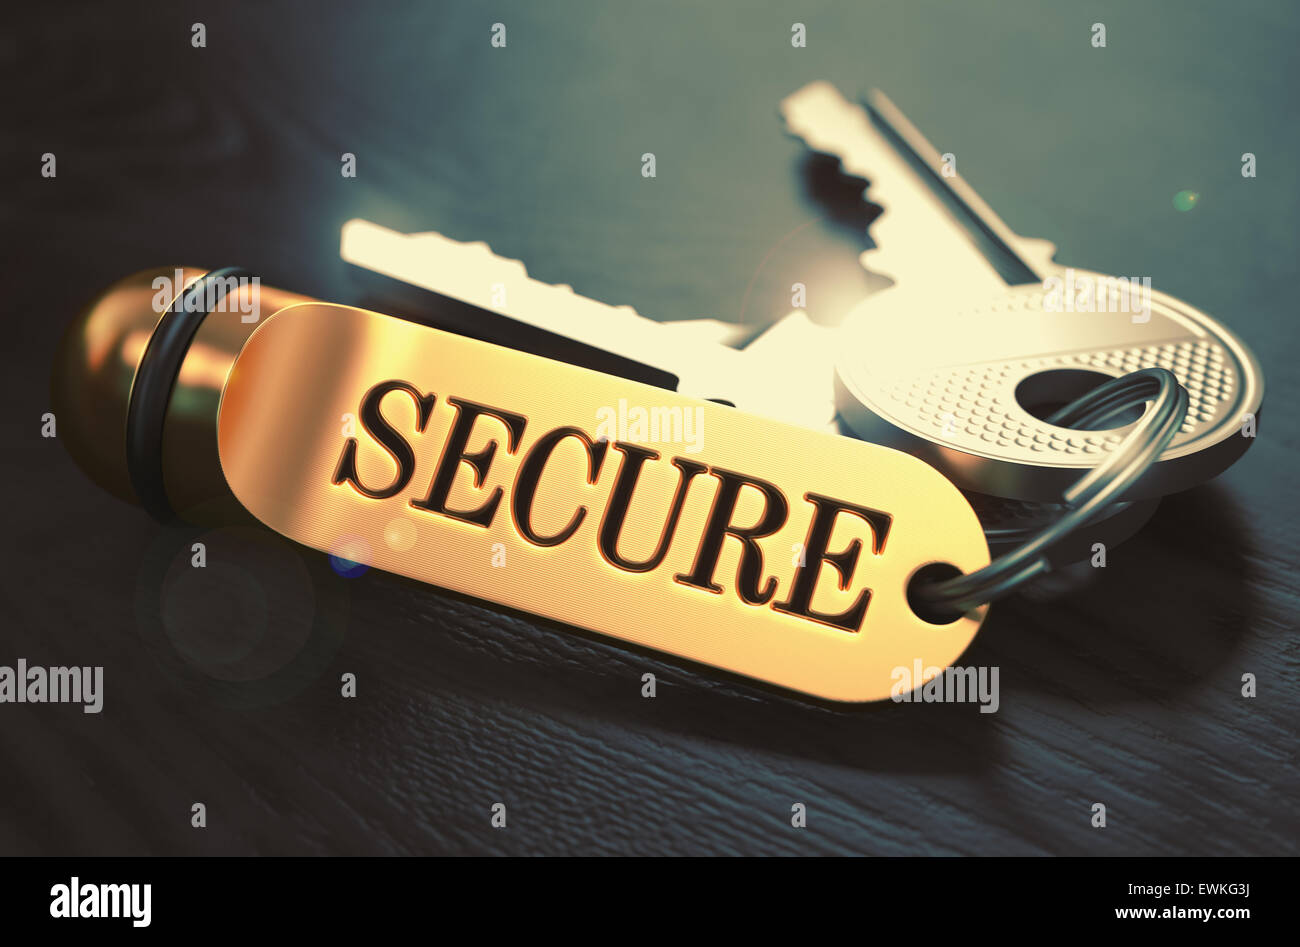 Secure - Schlüsselbund mit Text auf goldenen Schlüsselanhänger. Stockfoto